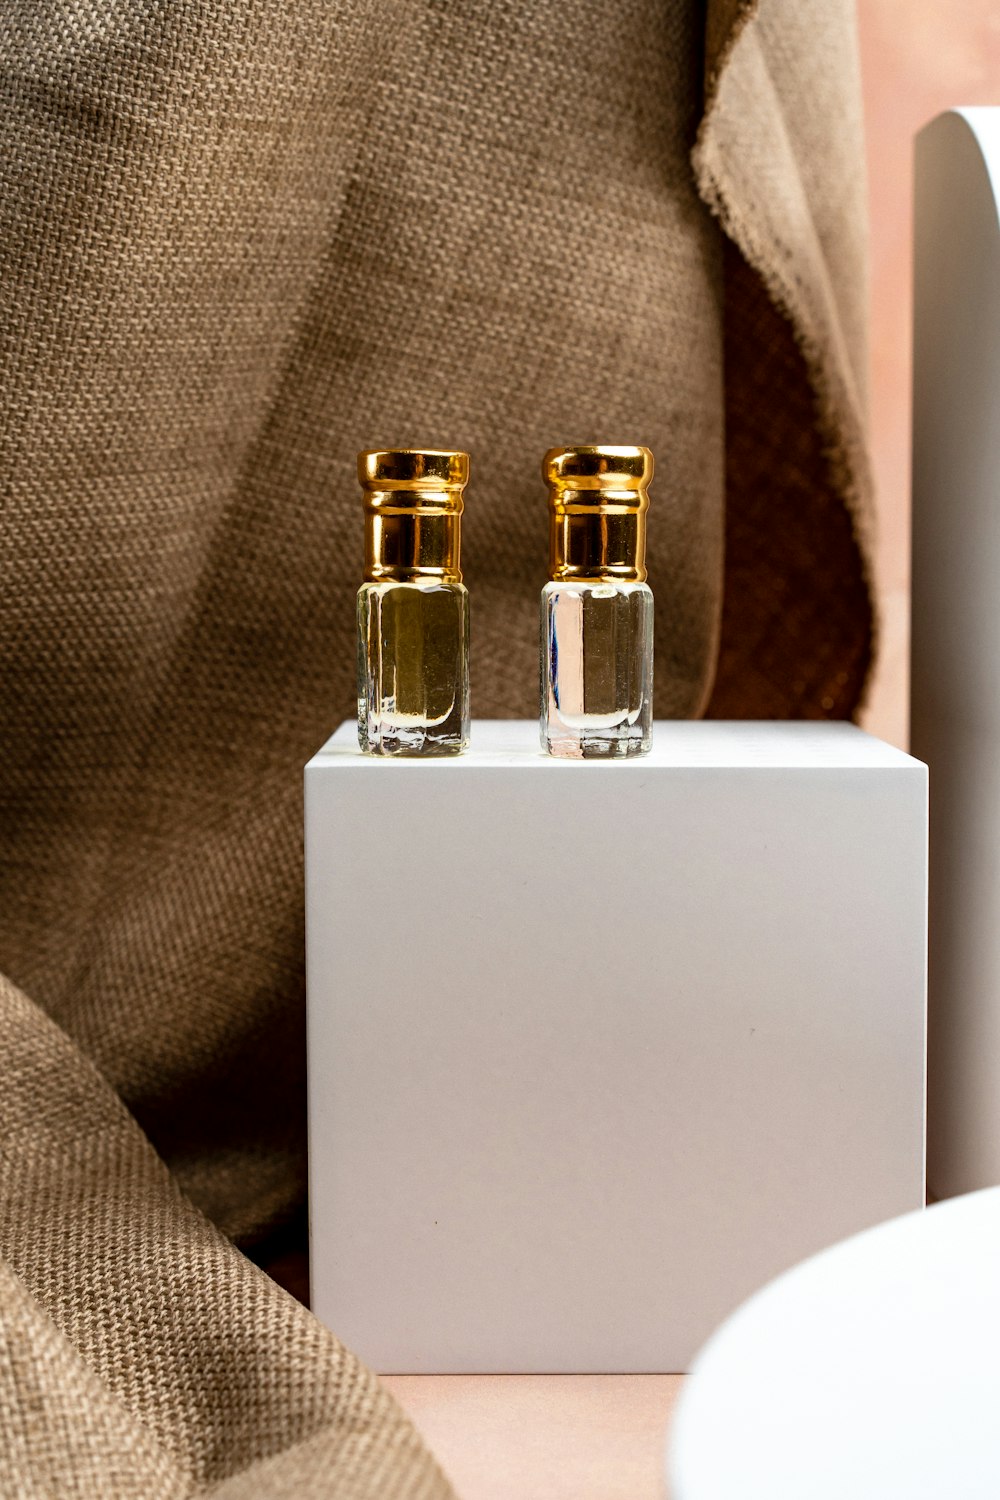 un paio di bottiglie sedute sopra una scatola bianca